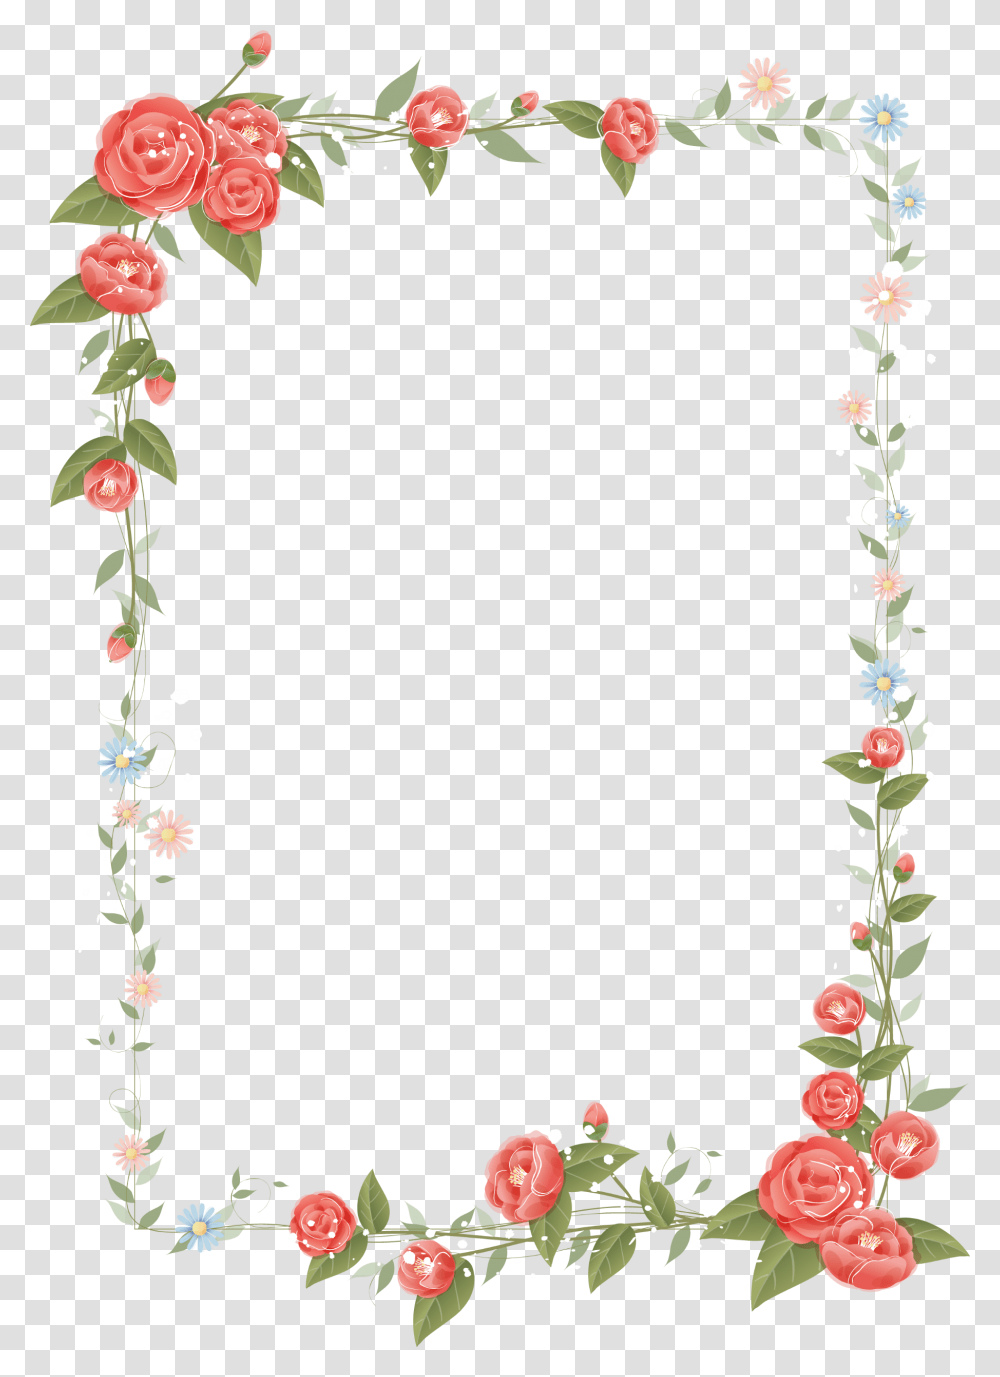 Border Flowers Drawing Clip Art Border Design Flower, Plant, Fruit, Food, Rose Transparent Png